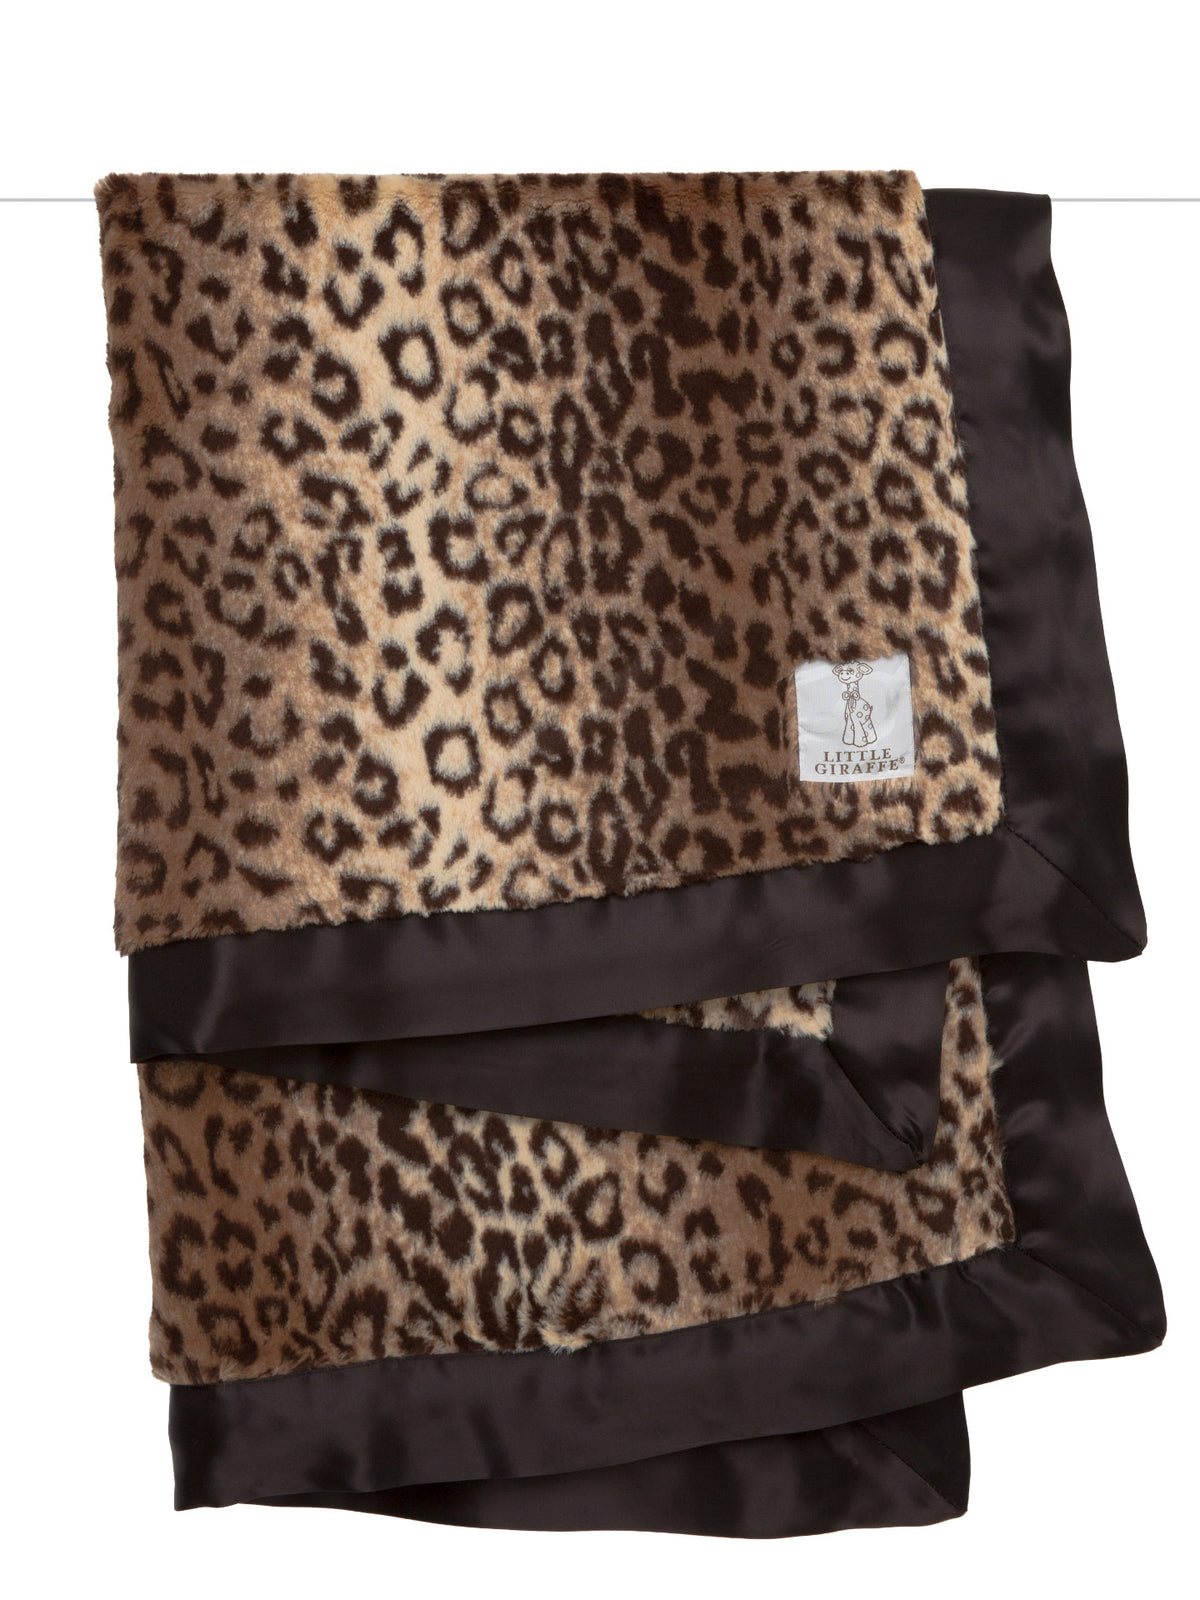 Luxe™ Leopard Baby Blanket